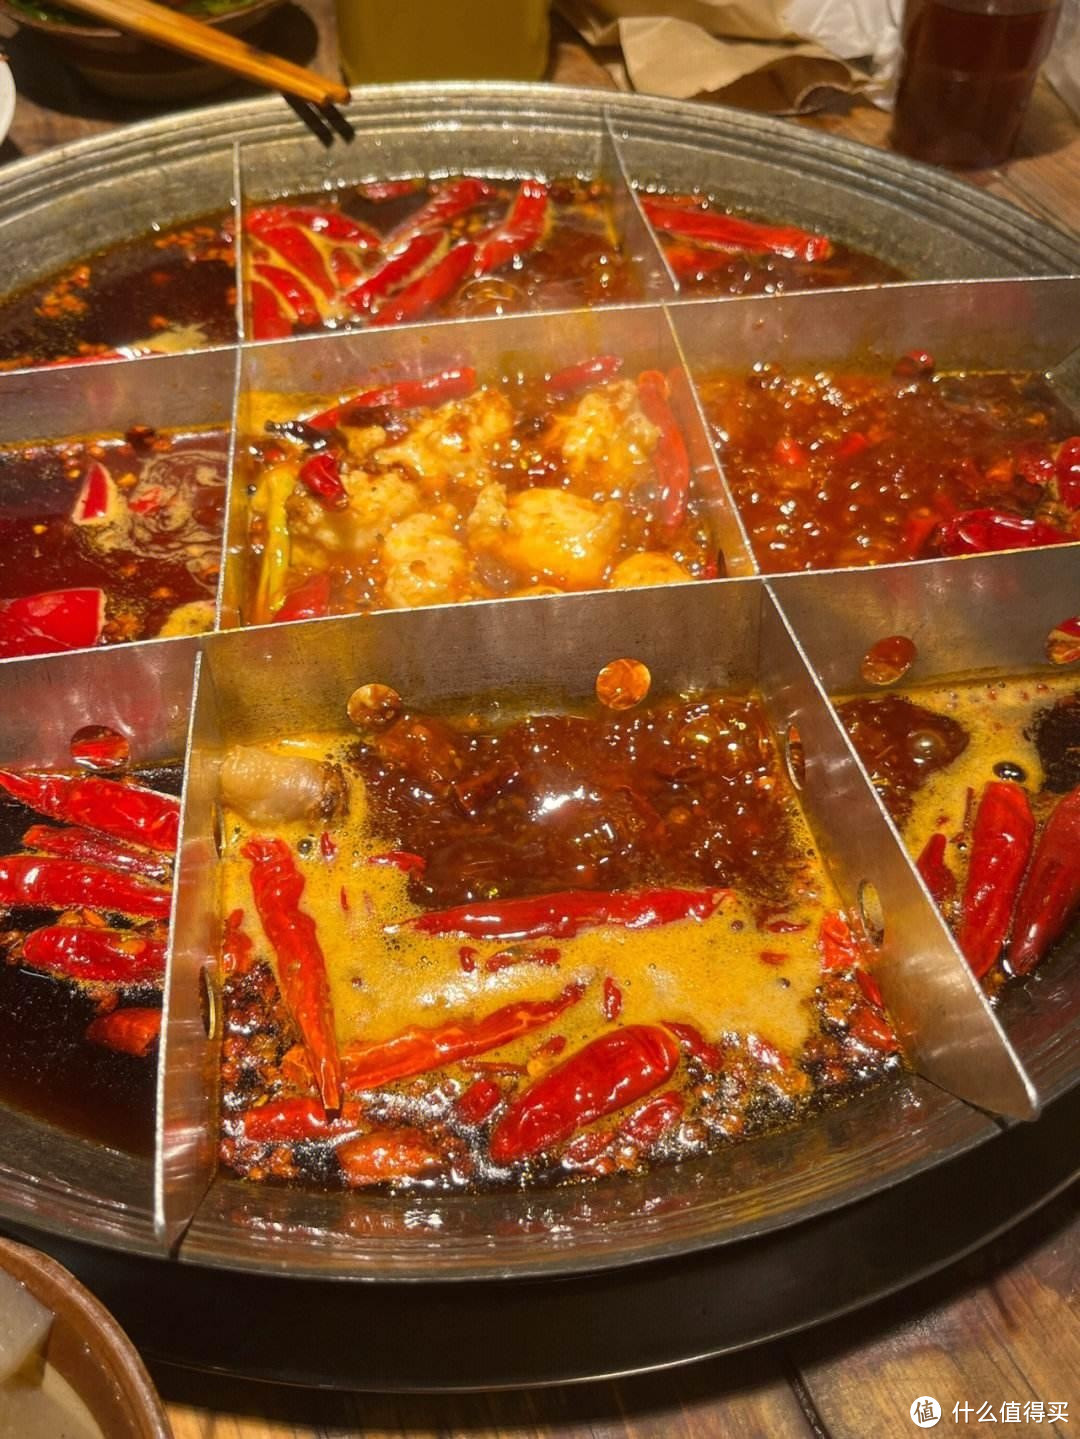 火锅，传承千年的中国美食与文化象征